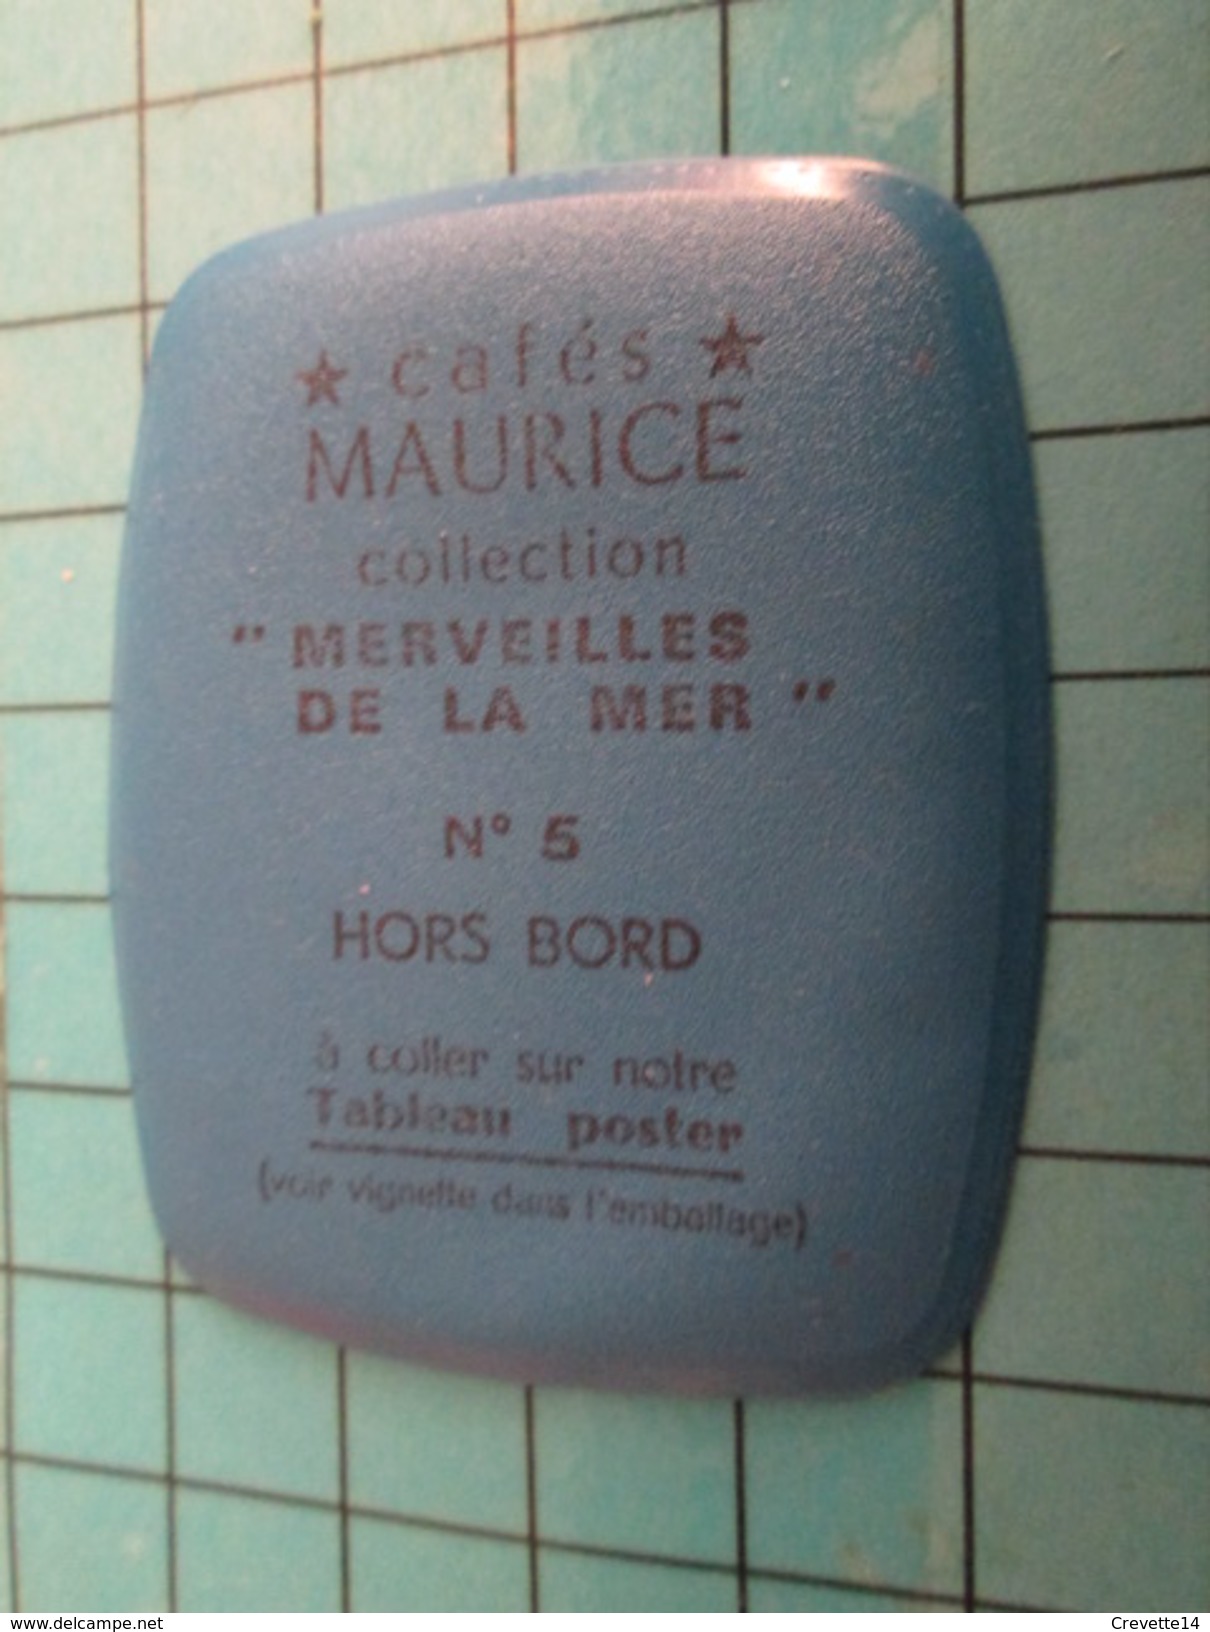 PUB 615 Ecusson Publicitaire Années 60  CAFES MAURICE N° 5 HORS-BORD   Collection  Merveilles De La Mer - Magnets